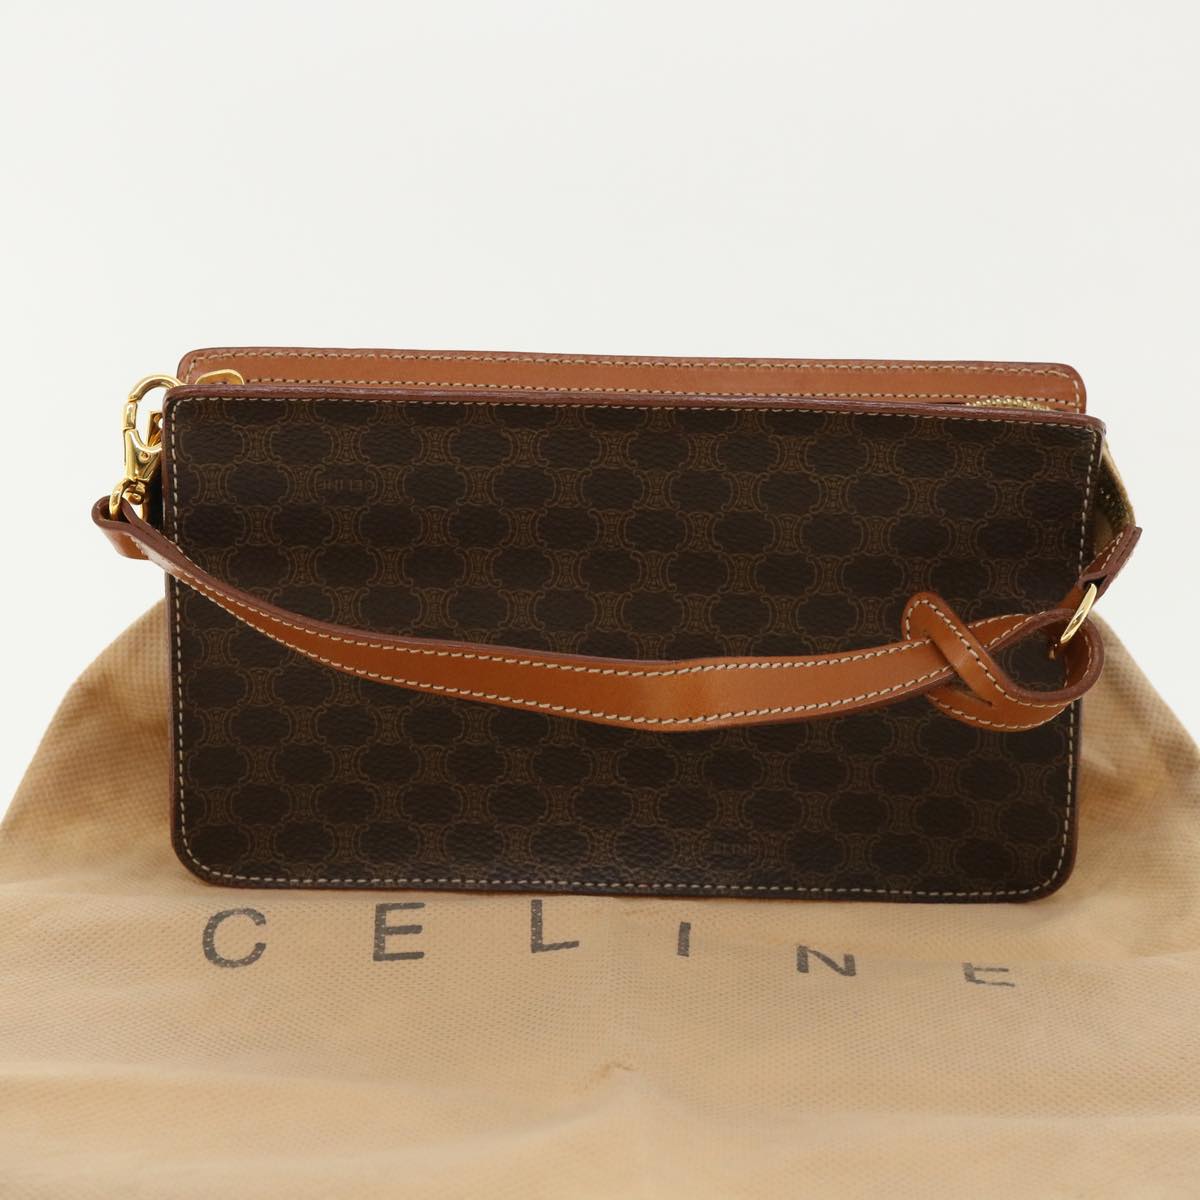 Celine Women's Celine Macadam Canvas Clutch Bag in Brown